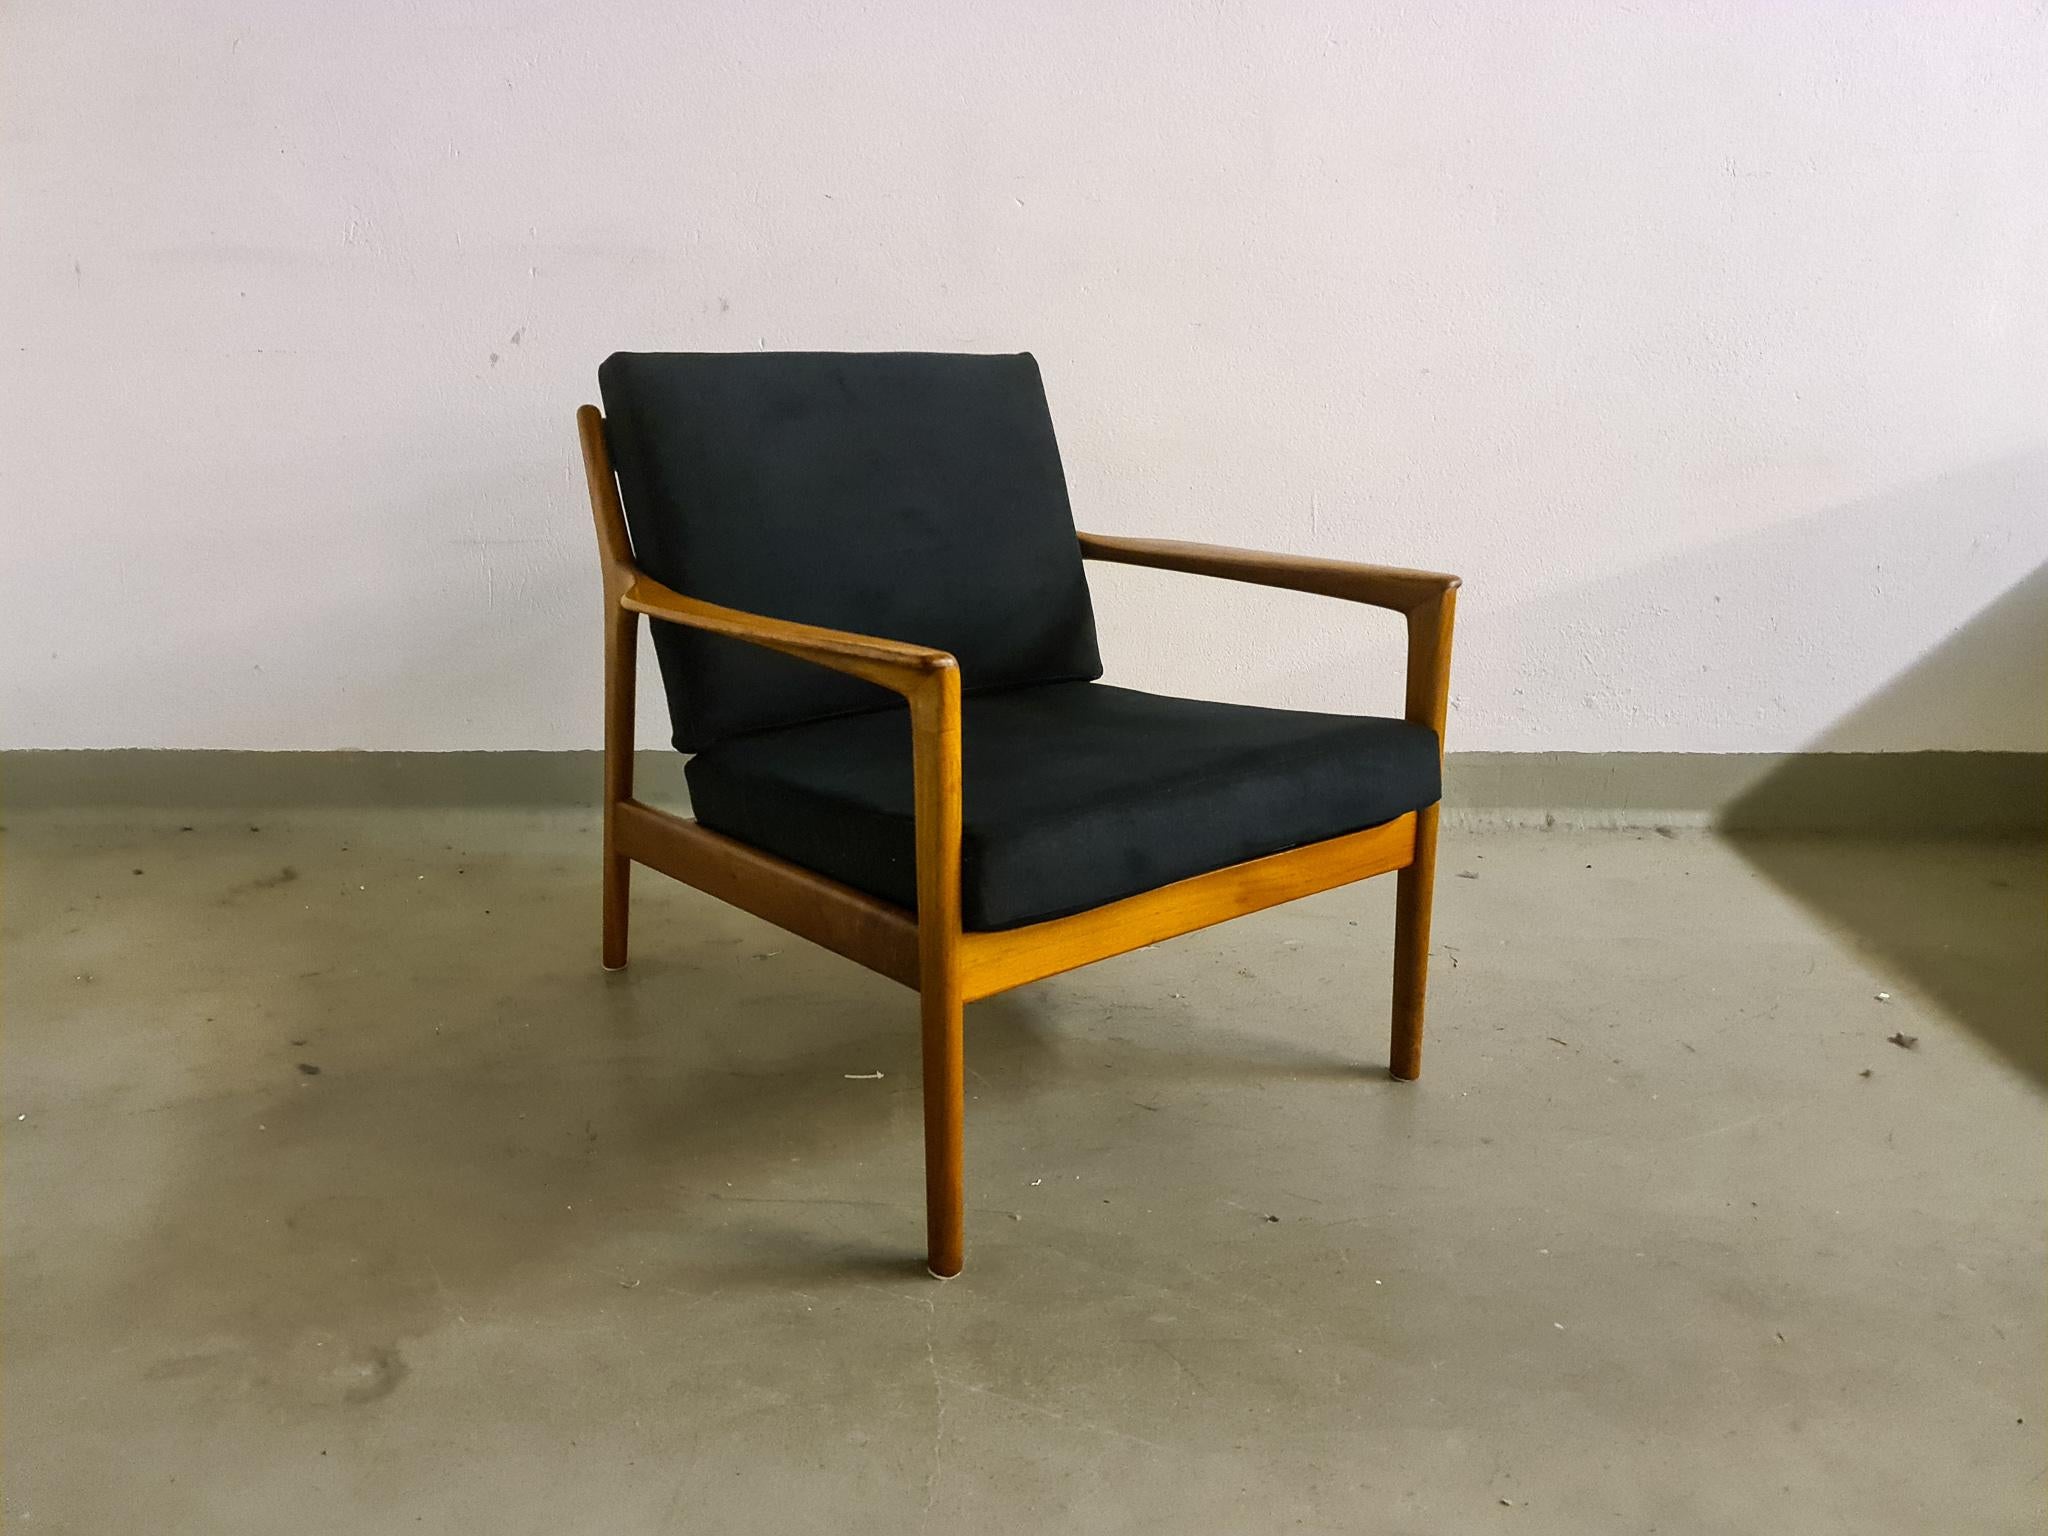 Ein schwedischer Mid-Century Modern Sessel aus Nussbaum, entworfen von Folke Ohlsson und hergestellt von DUX.
Die Struktur des Sofas ist mit eleganten Linien versehen, um aus allen Richtungen gut auszusehen. Neue Polsterung aus hochwertigem